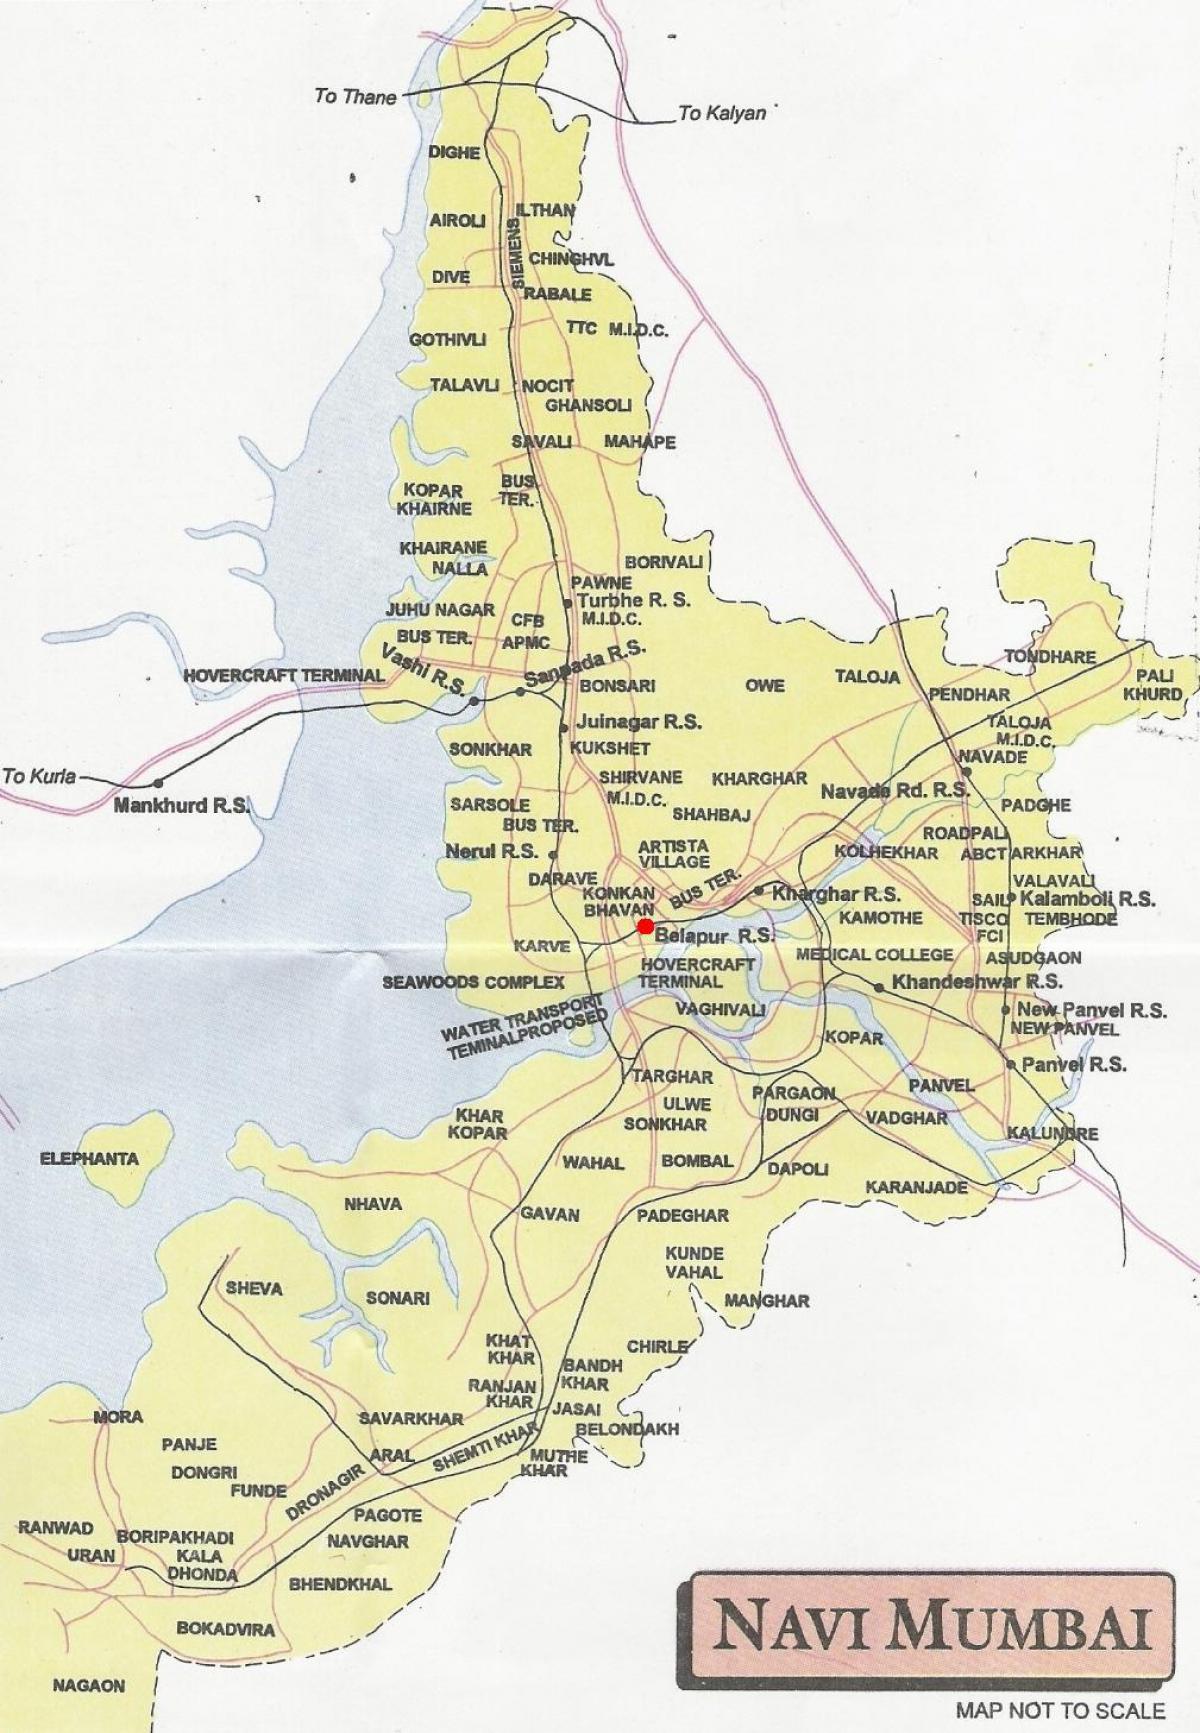 kort over navi Mumbai city